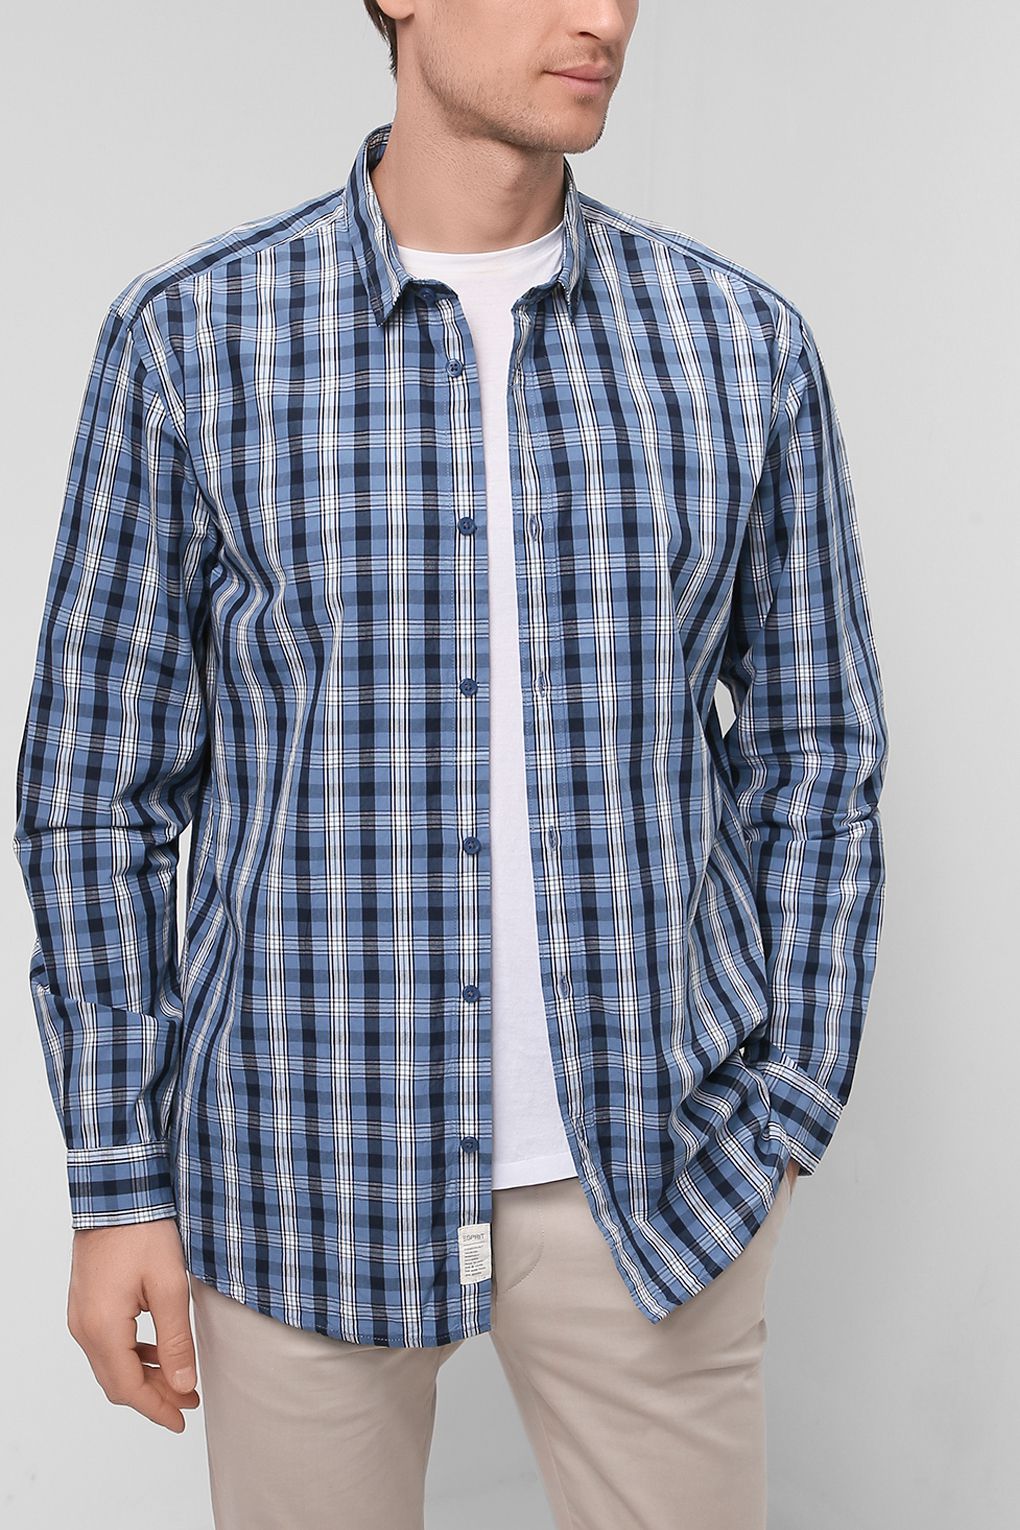 Рубашка мужская Esprit 022EE2F305 синяя L